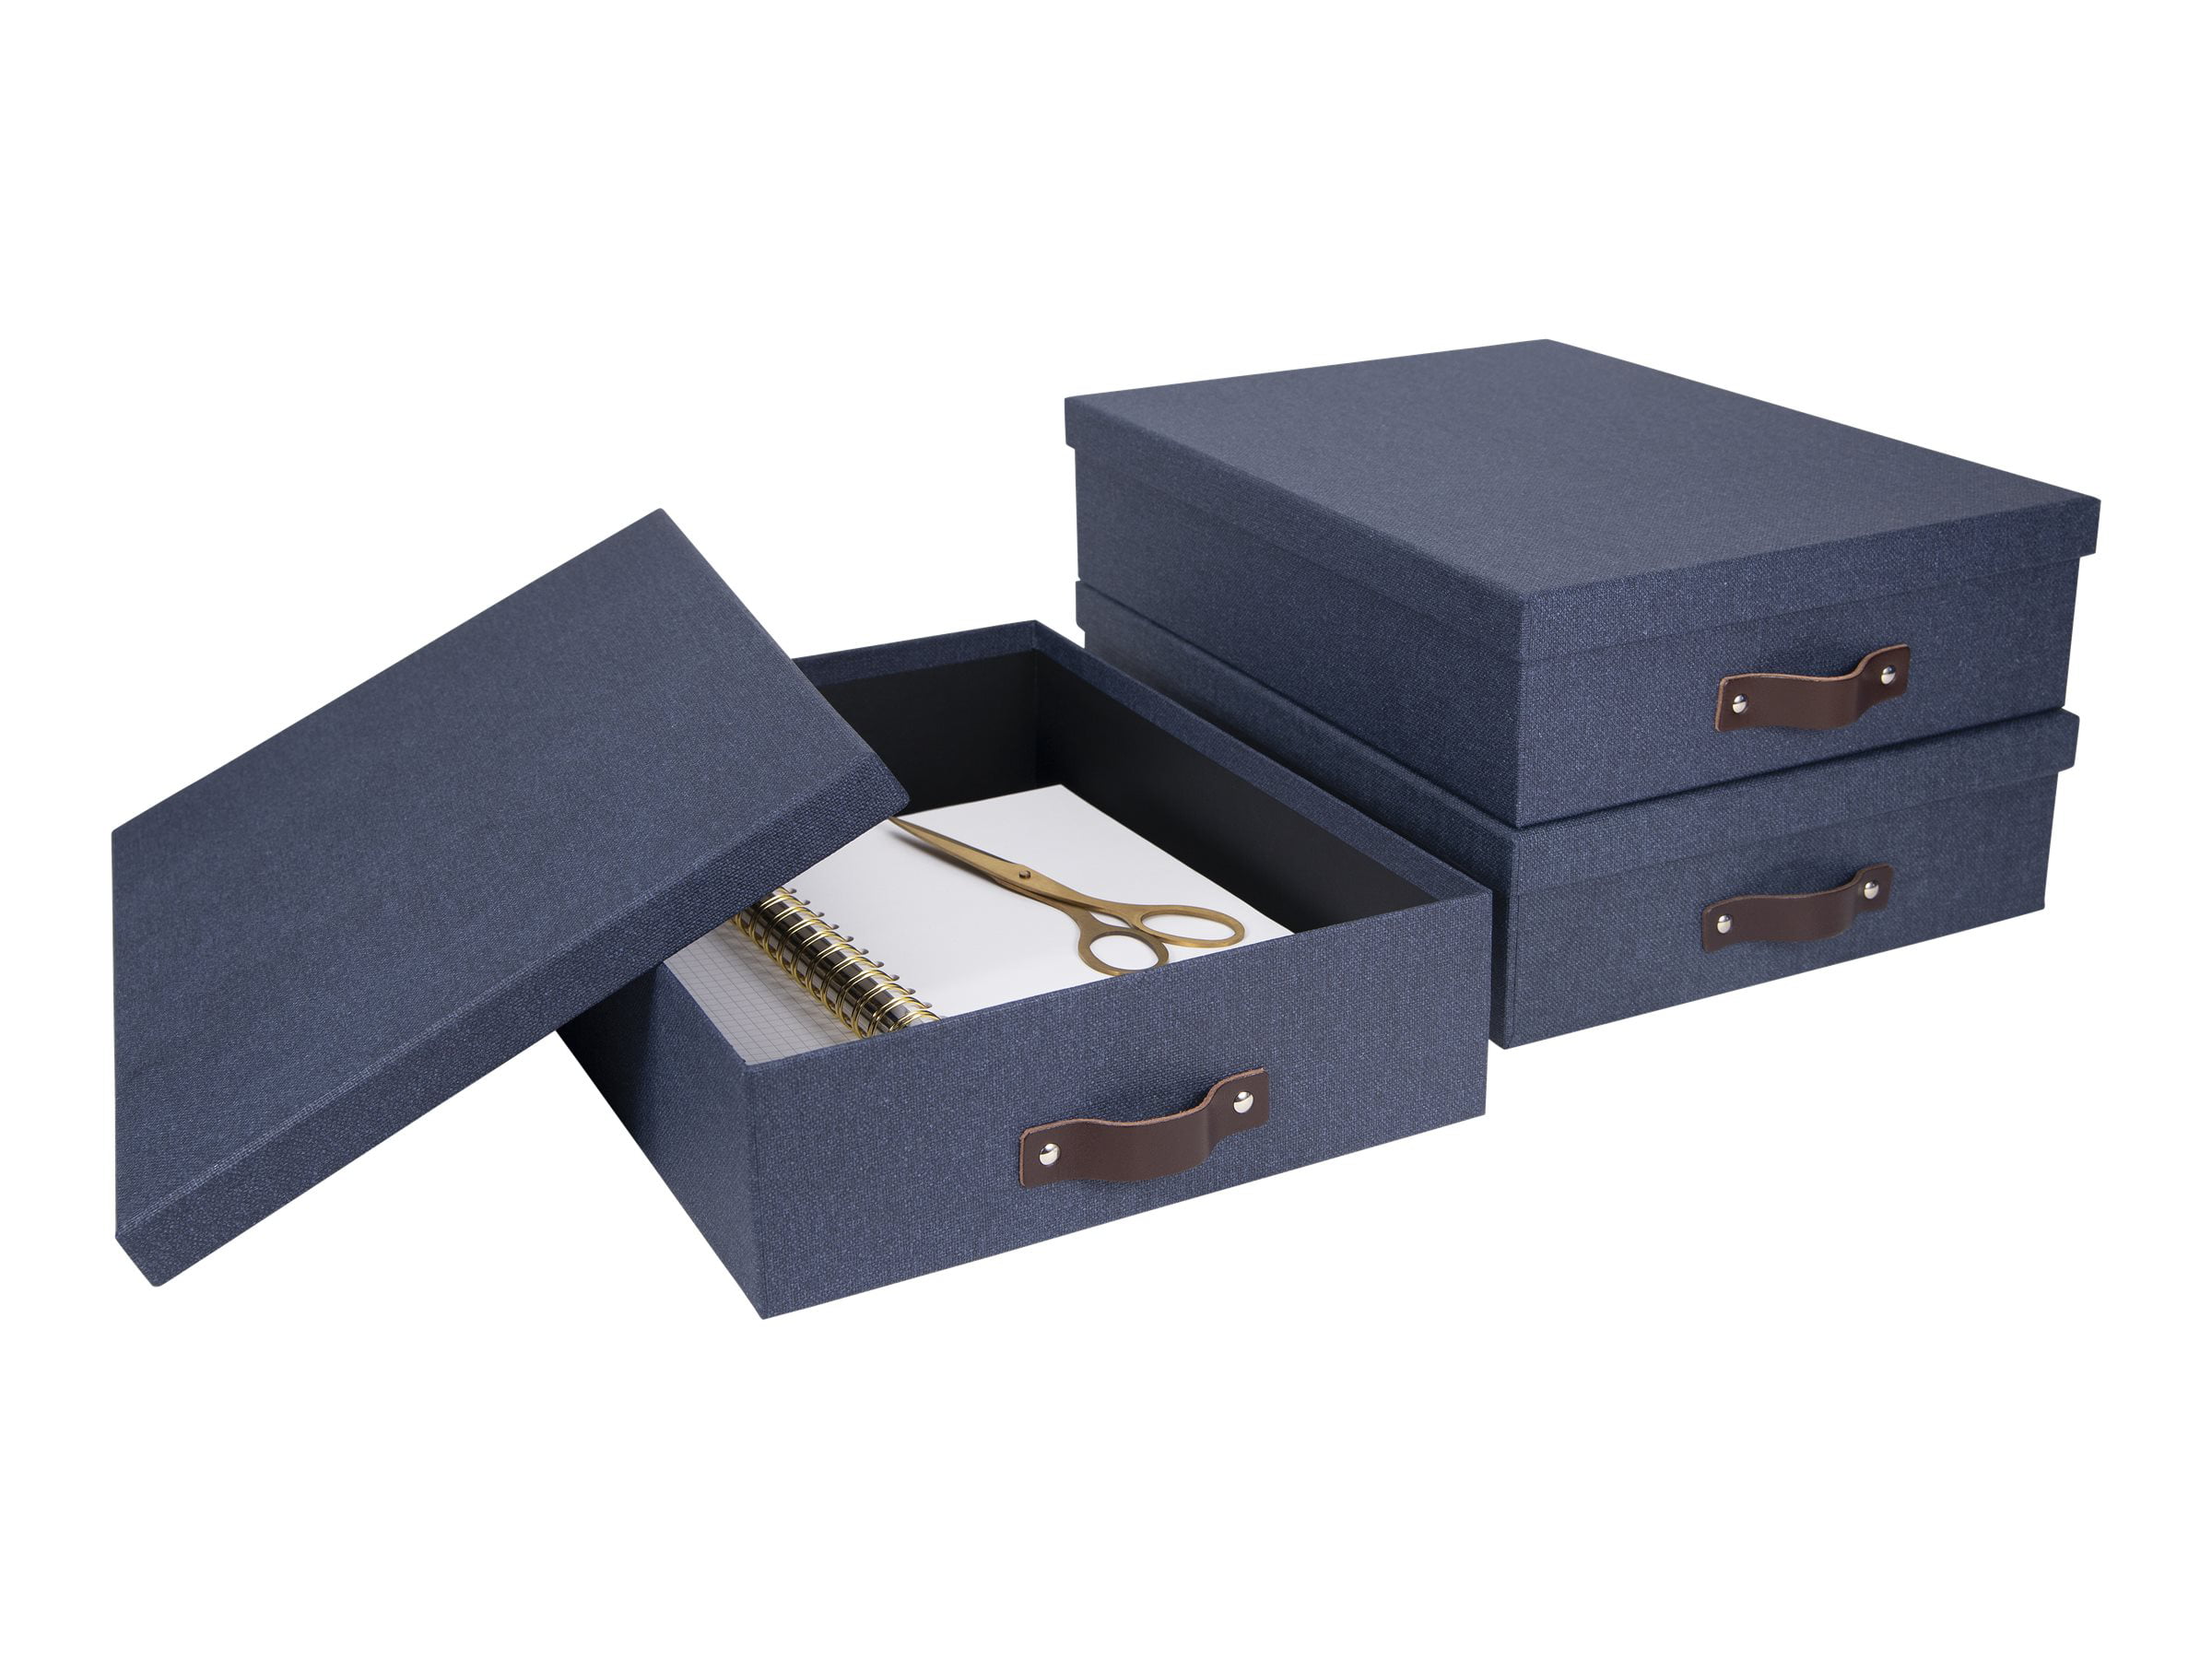 Bigso Box of Sweden rangement de tiroir pour doc…